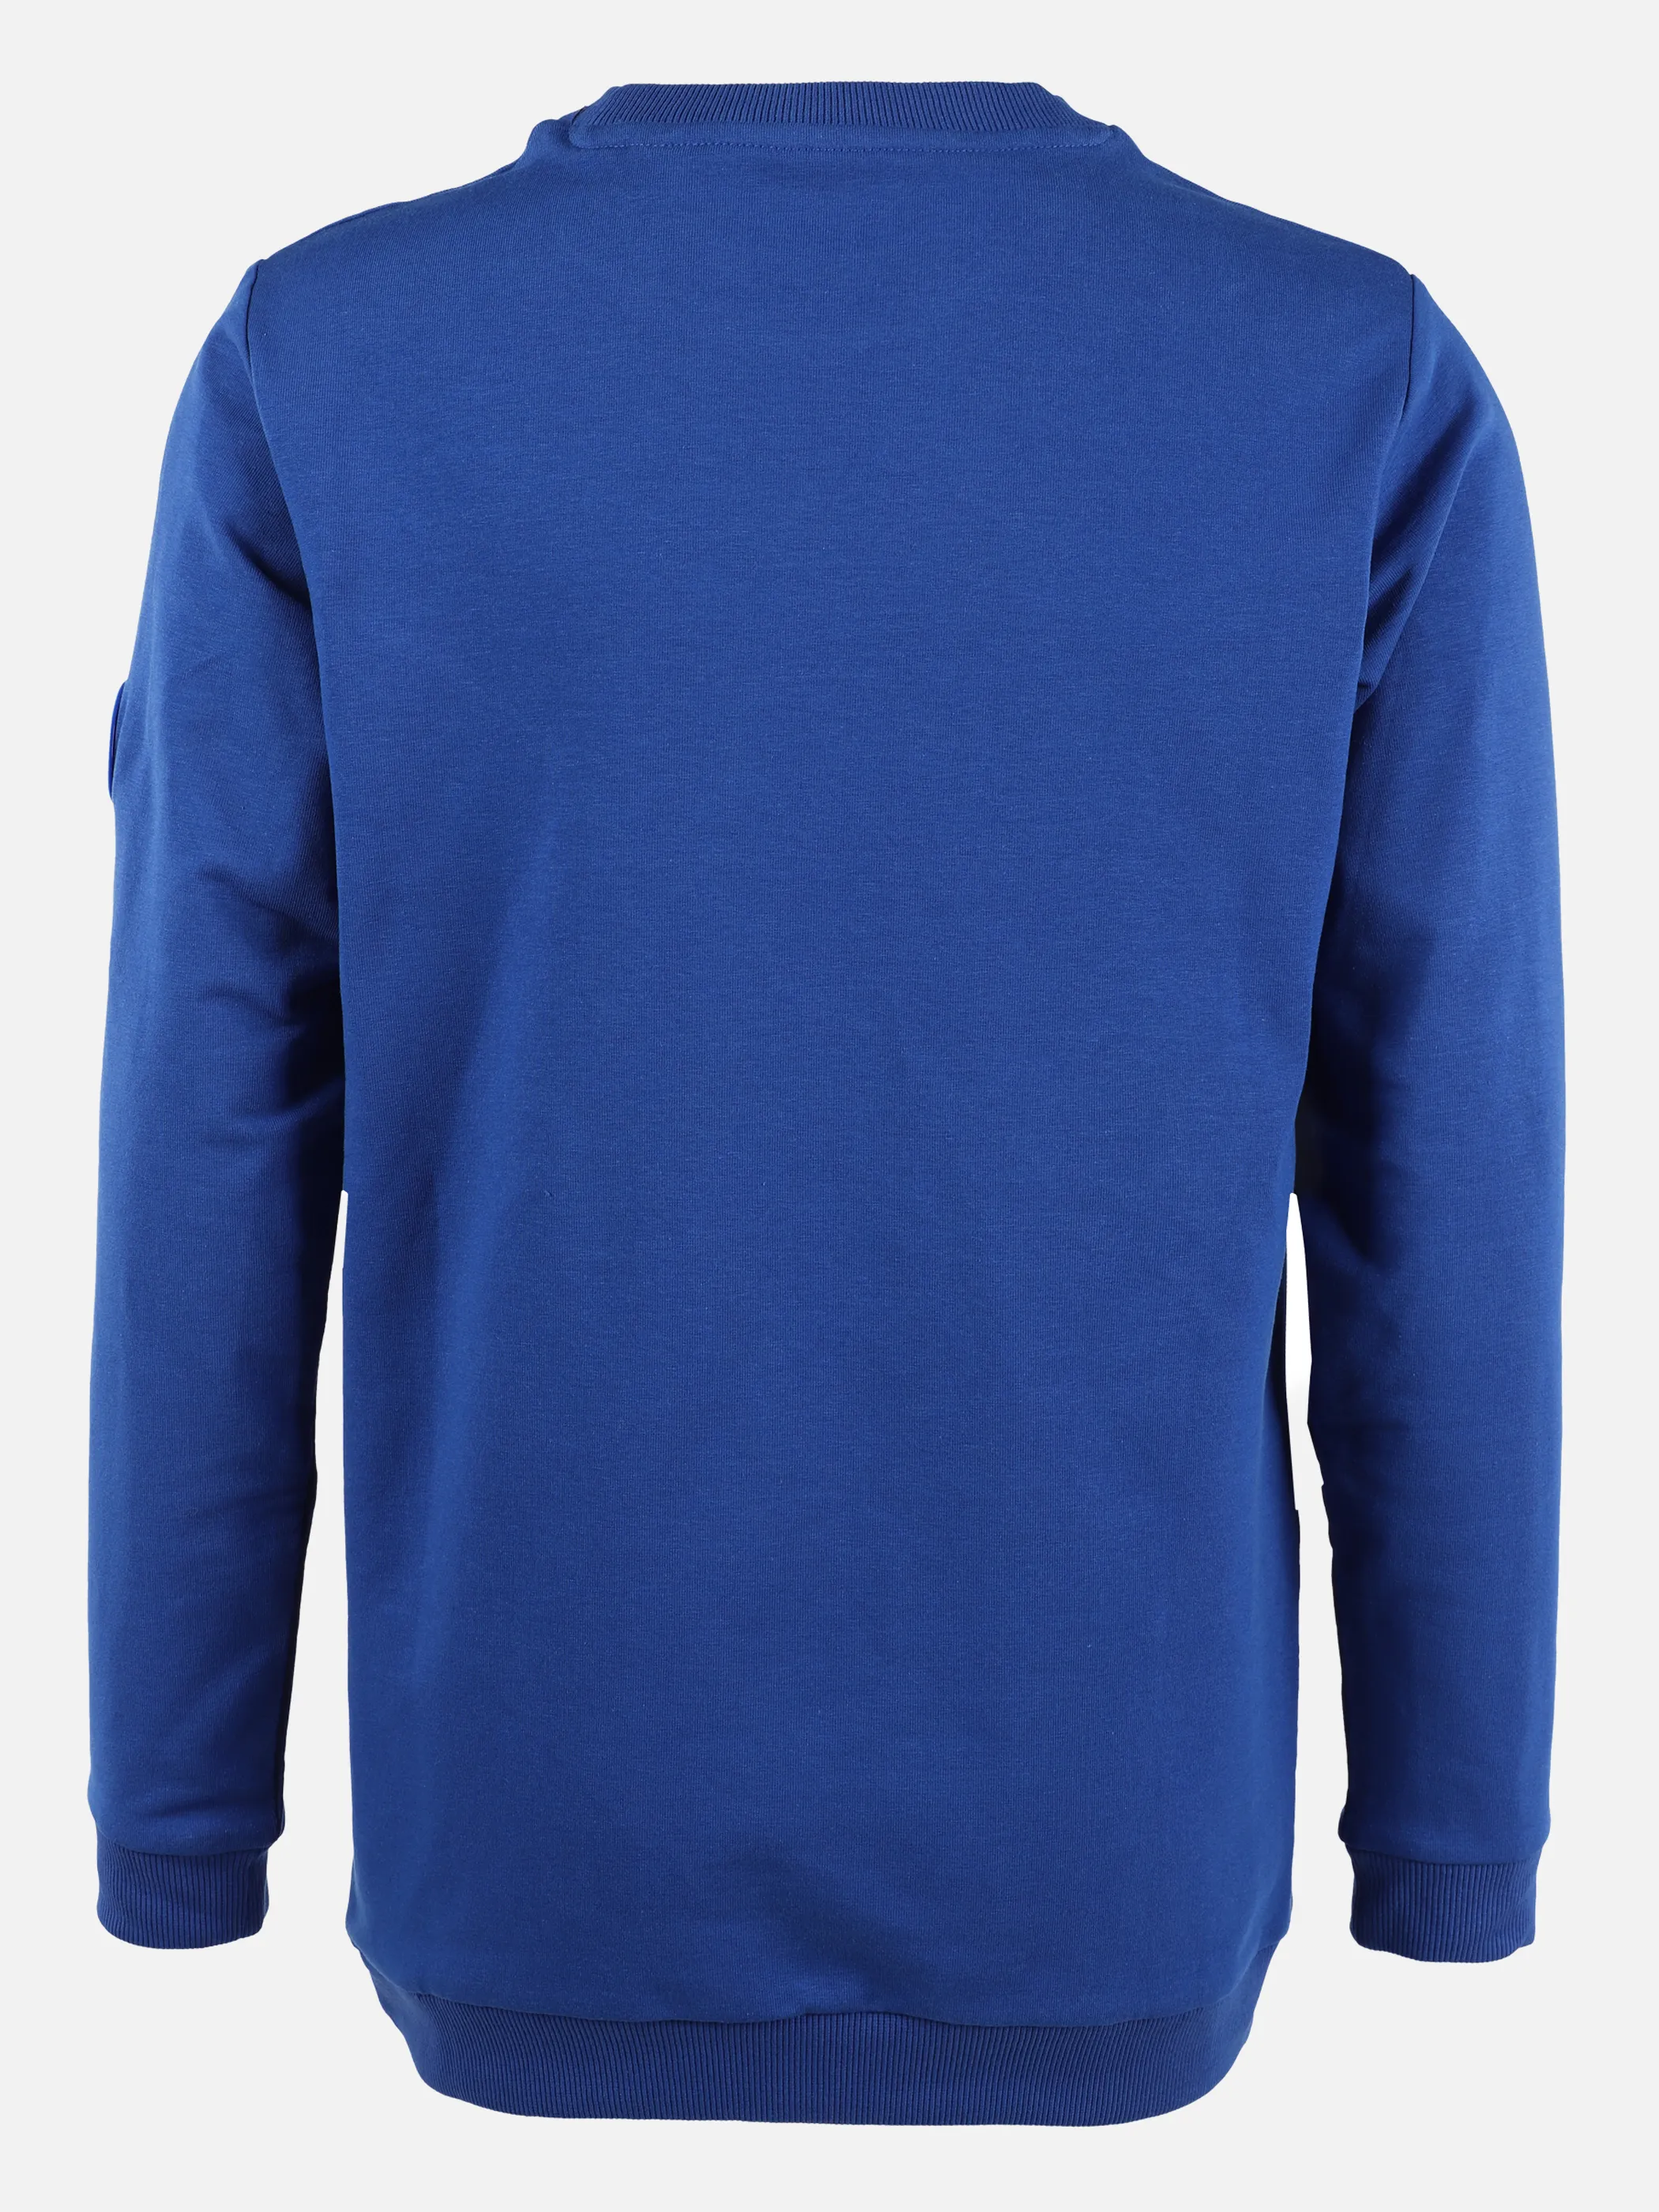 Stop + Go JJ Sweatshirt mit kleinem Frontdruck Blau 875615 BLAU 2